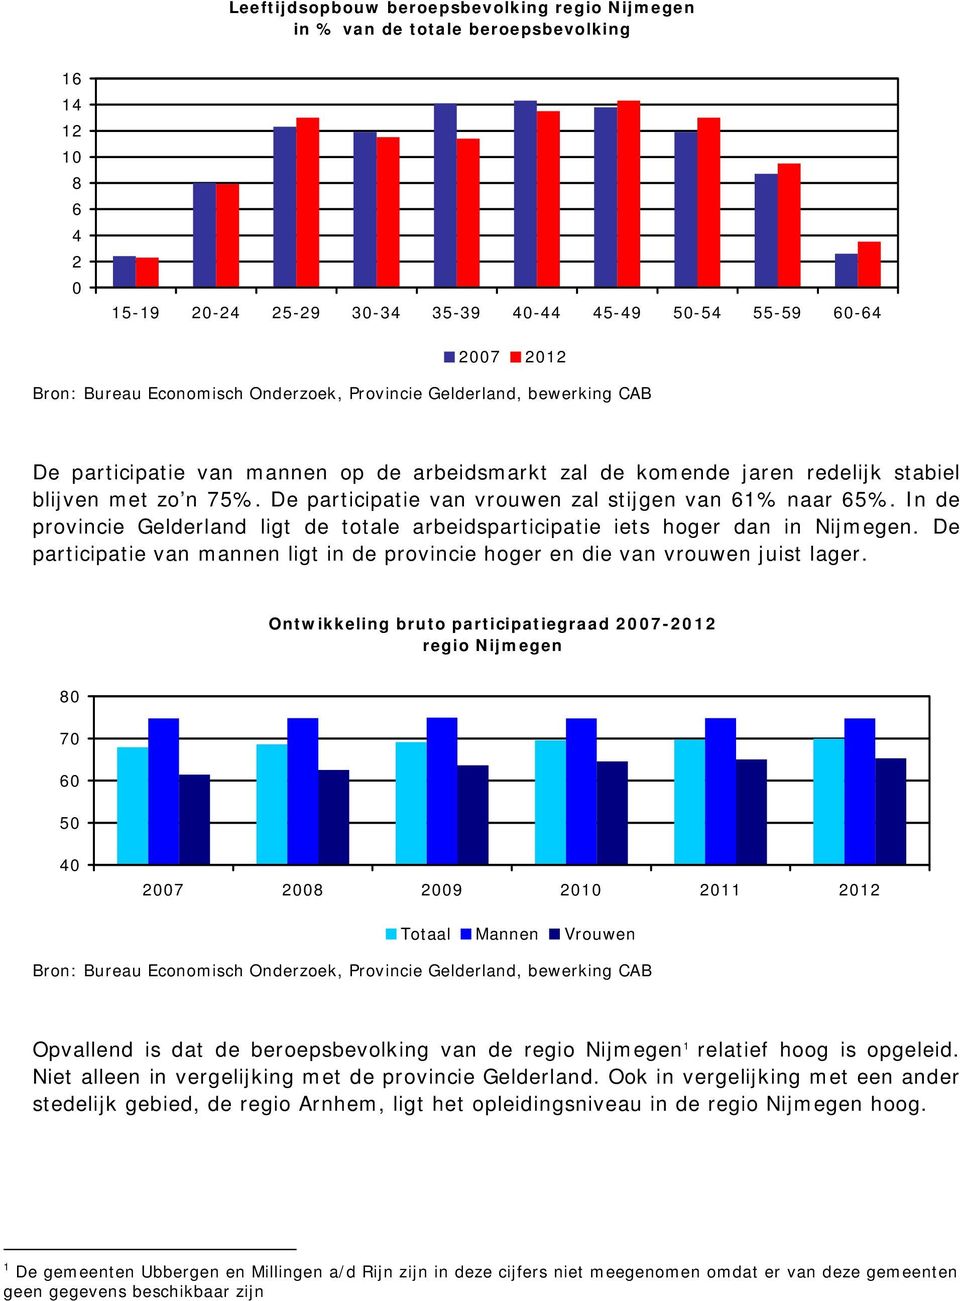 De participatie van vrouwen zal stijgen van 61% naar 65%. In de provincie Gelderland ligt de totale arbeidsparticipatie iets hoger dan in Nijmegen.